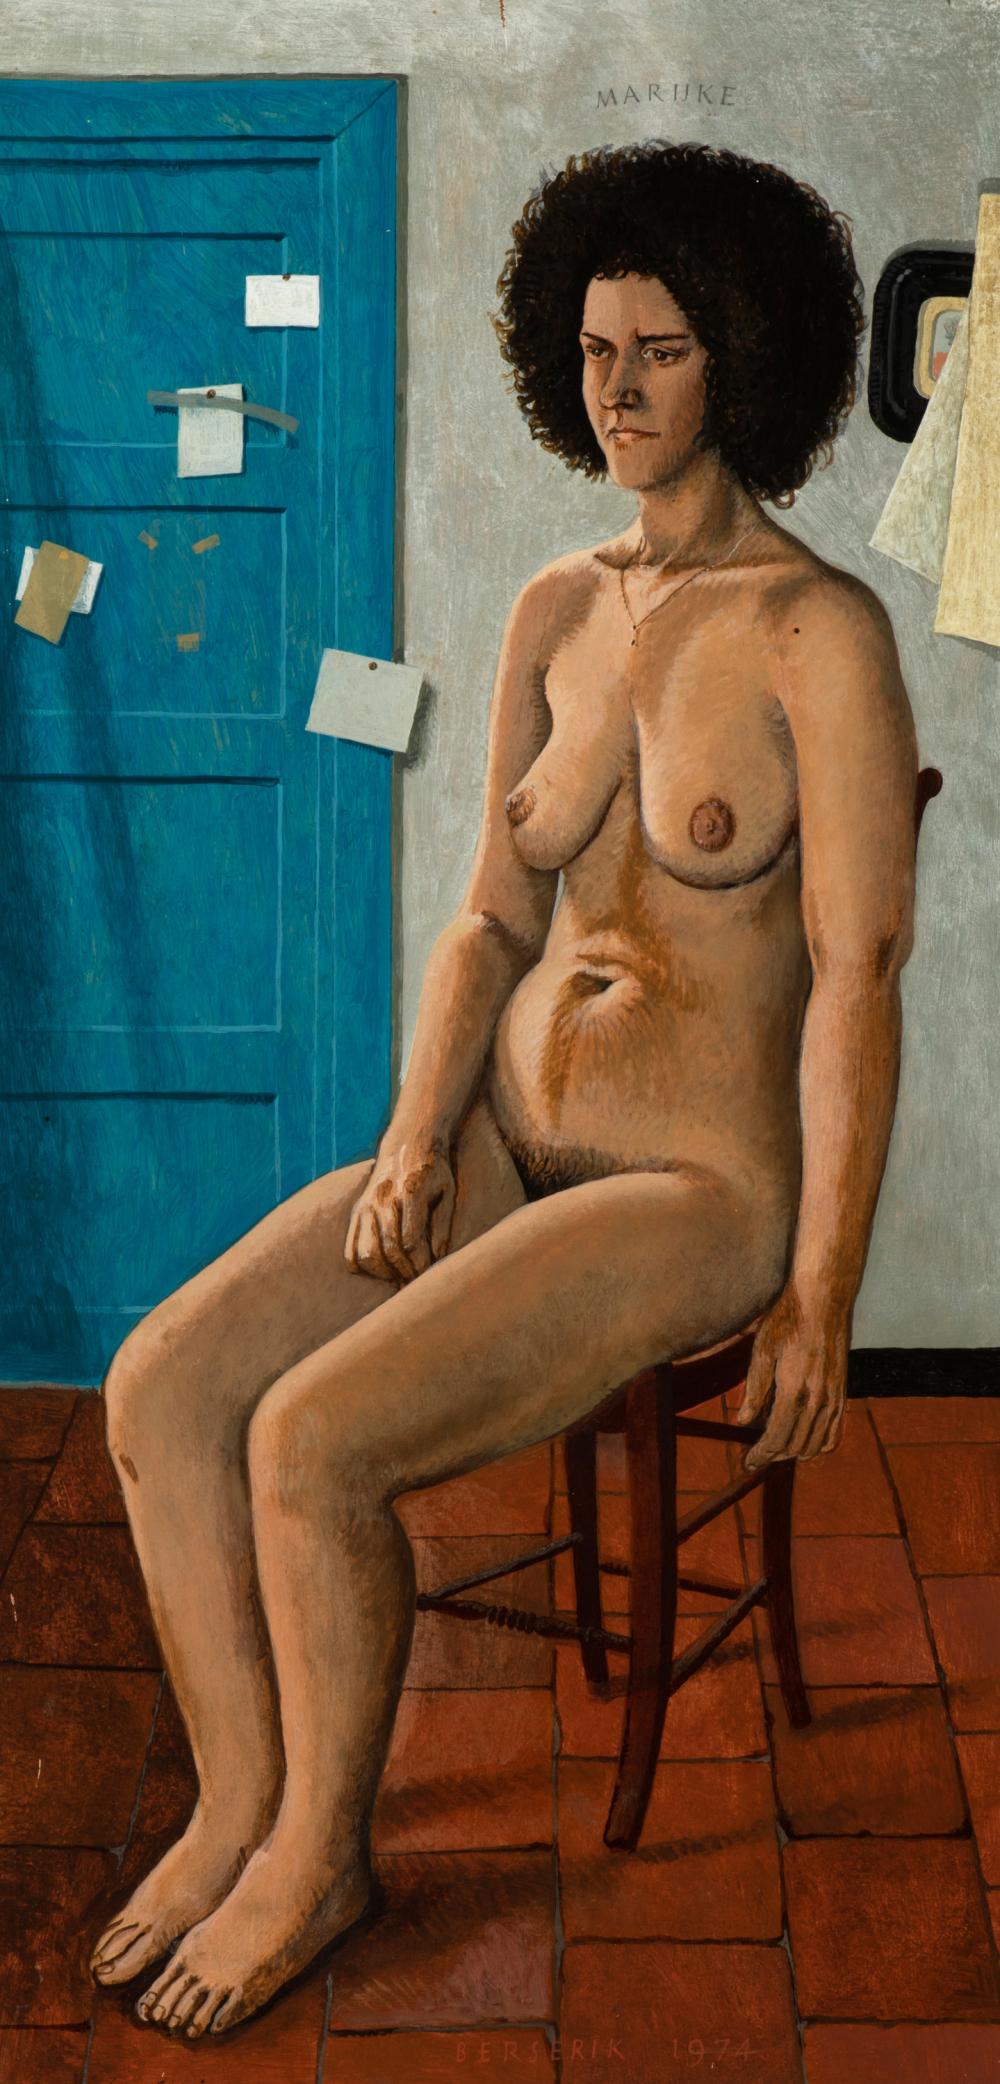 Marijke zit model (Marijke sitting model), 1974